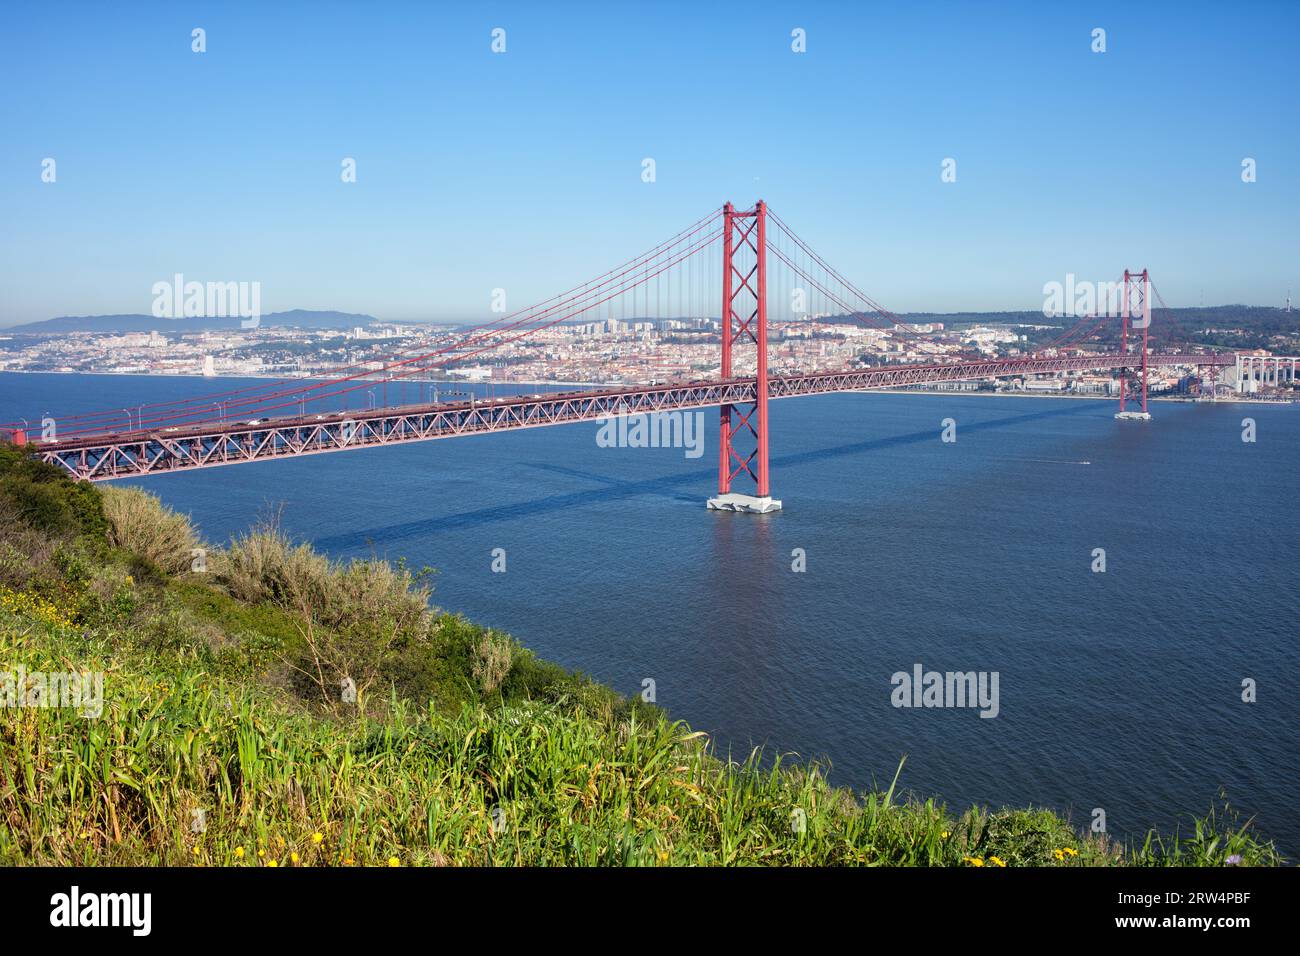 25 avril Pont suspendu sur le Tage, reliant Almada et Lisbonne au Portugal Banque D'Images